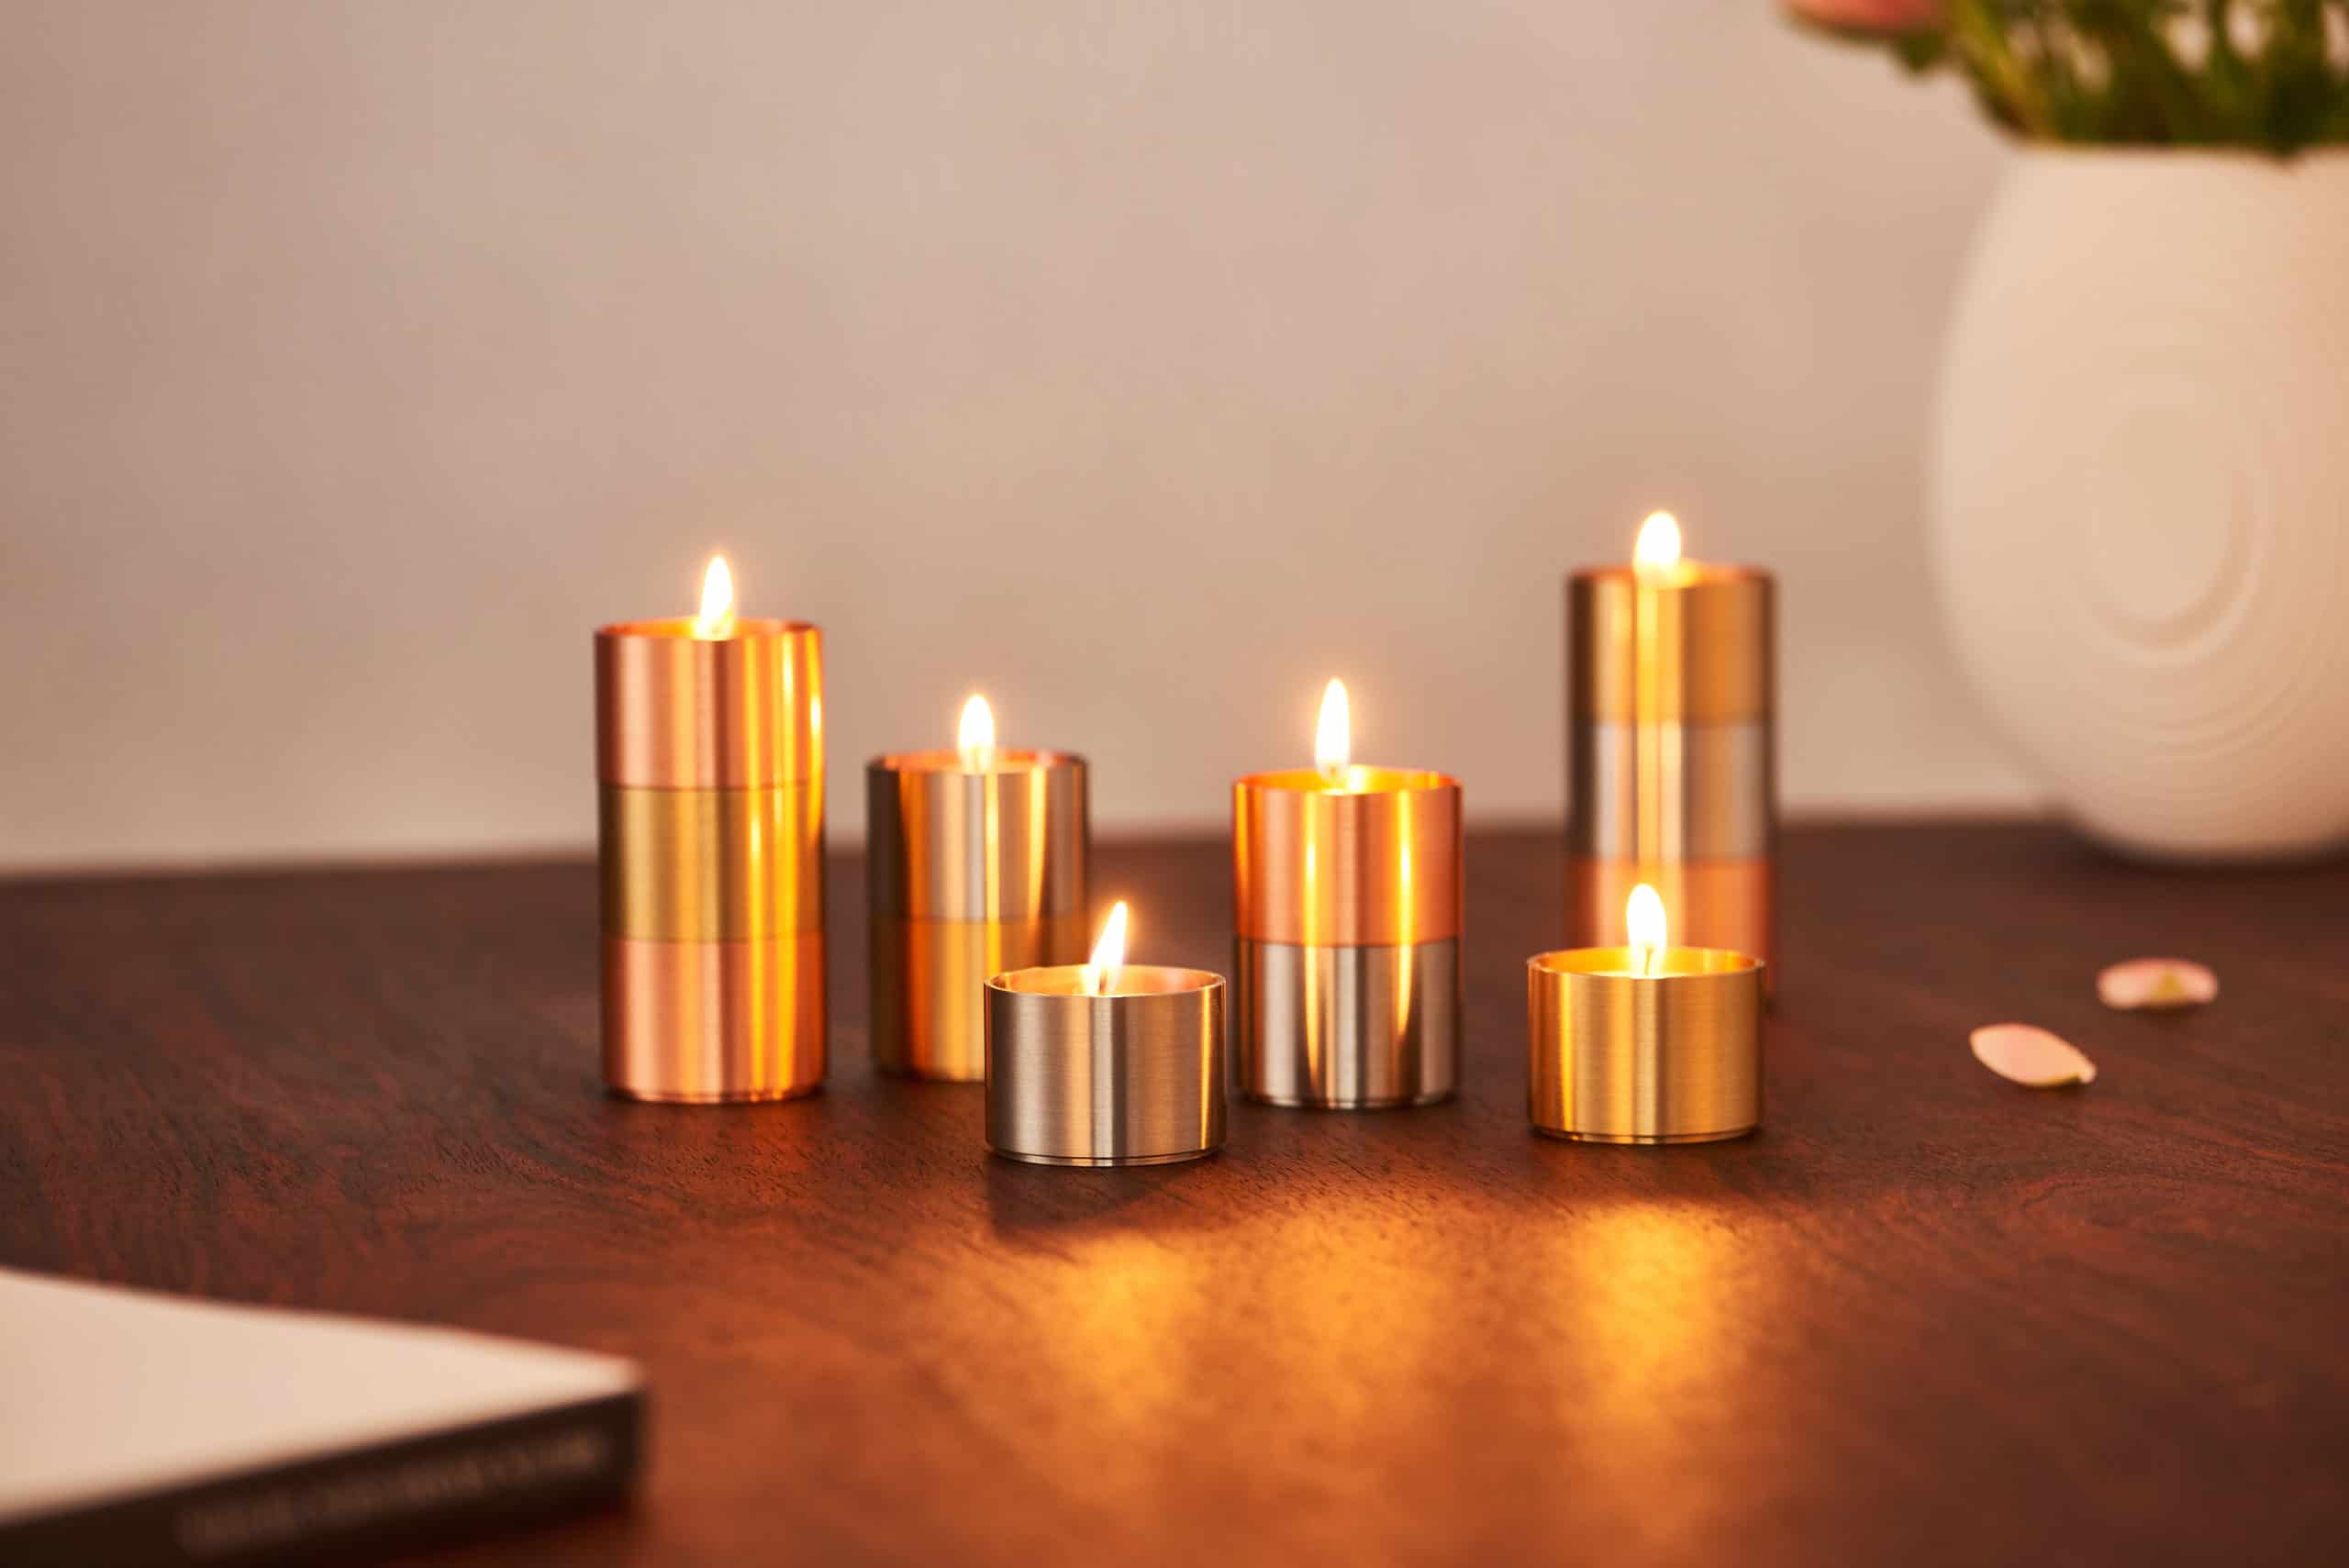 Architectmade-Trepas-Copper-Brass-Stainless-Steel-Candleholder-Denmark-Peter-Karpf-6